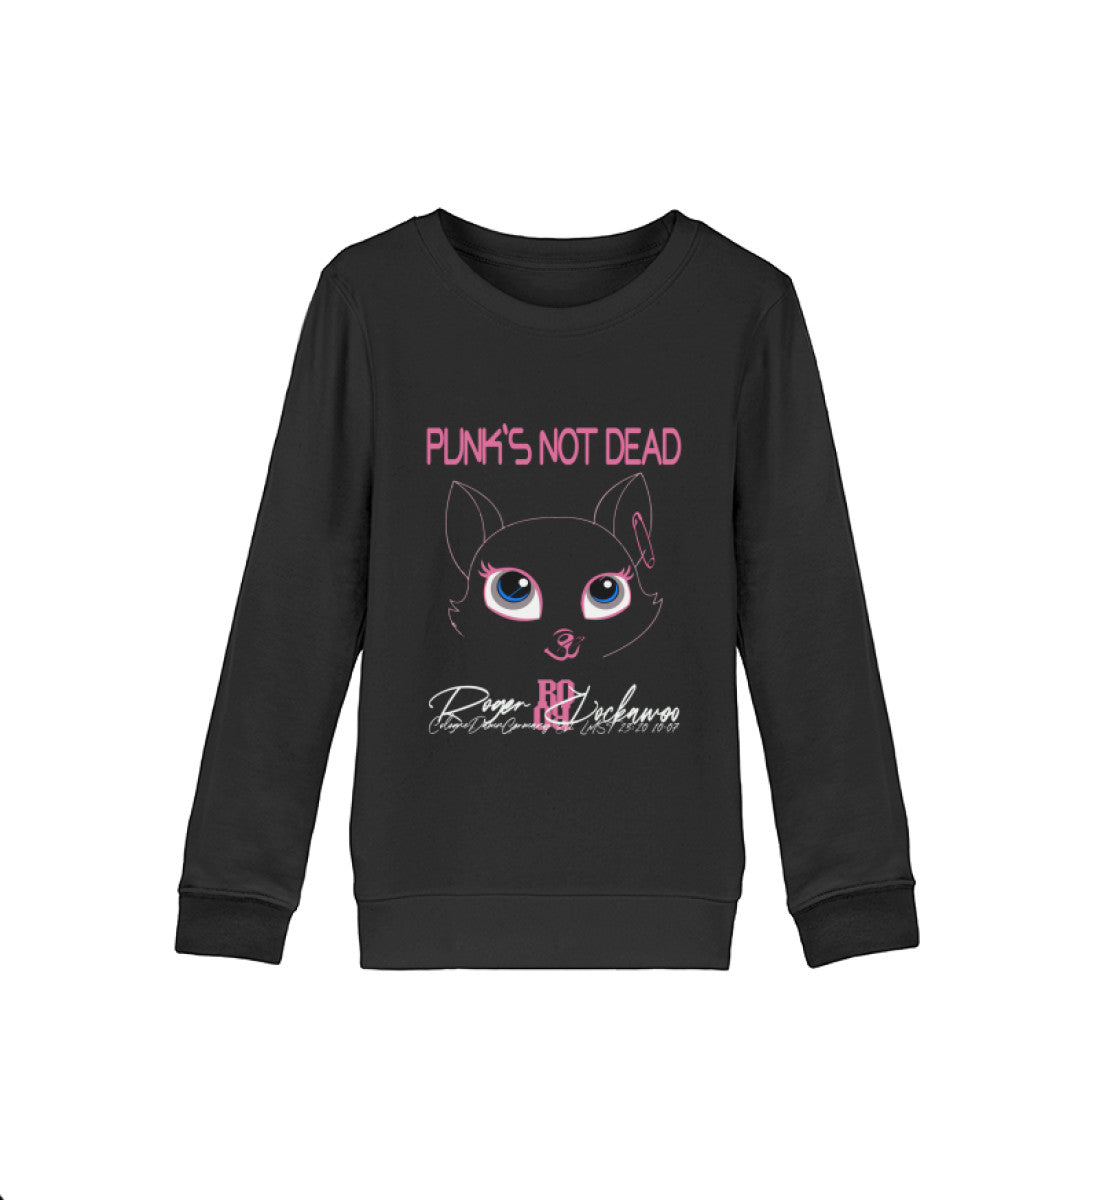 Sweatshirt Kids Kinder Jungen und Mädchen mit Print Design der Punks not dead Katzen Kopf Motiv Kollektion im Roger Rockawoo Fashion Webstore Schwarz-16